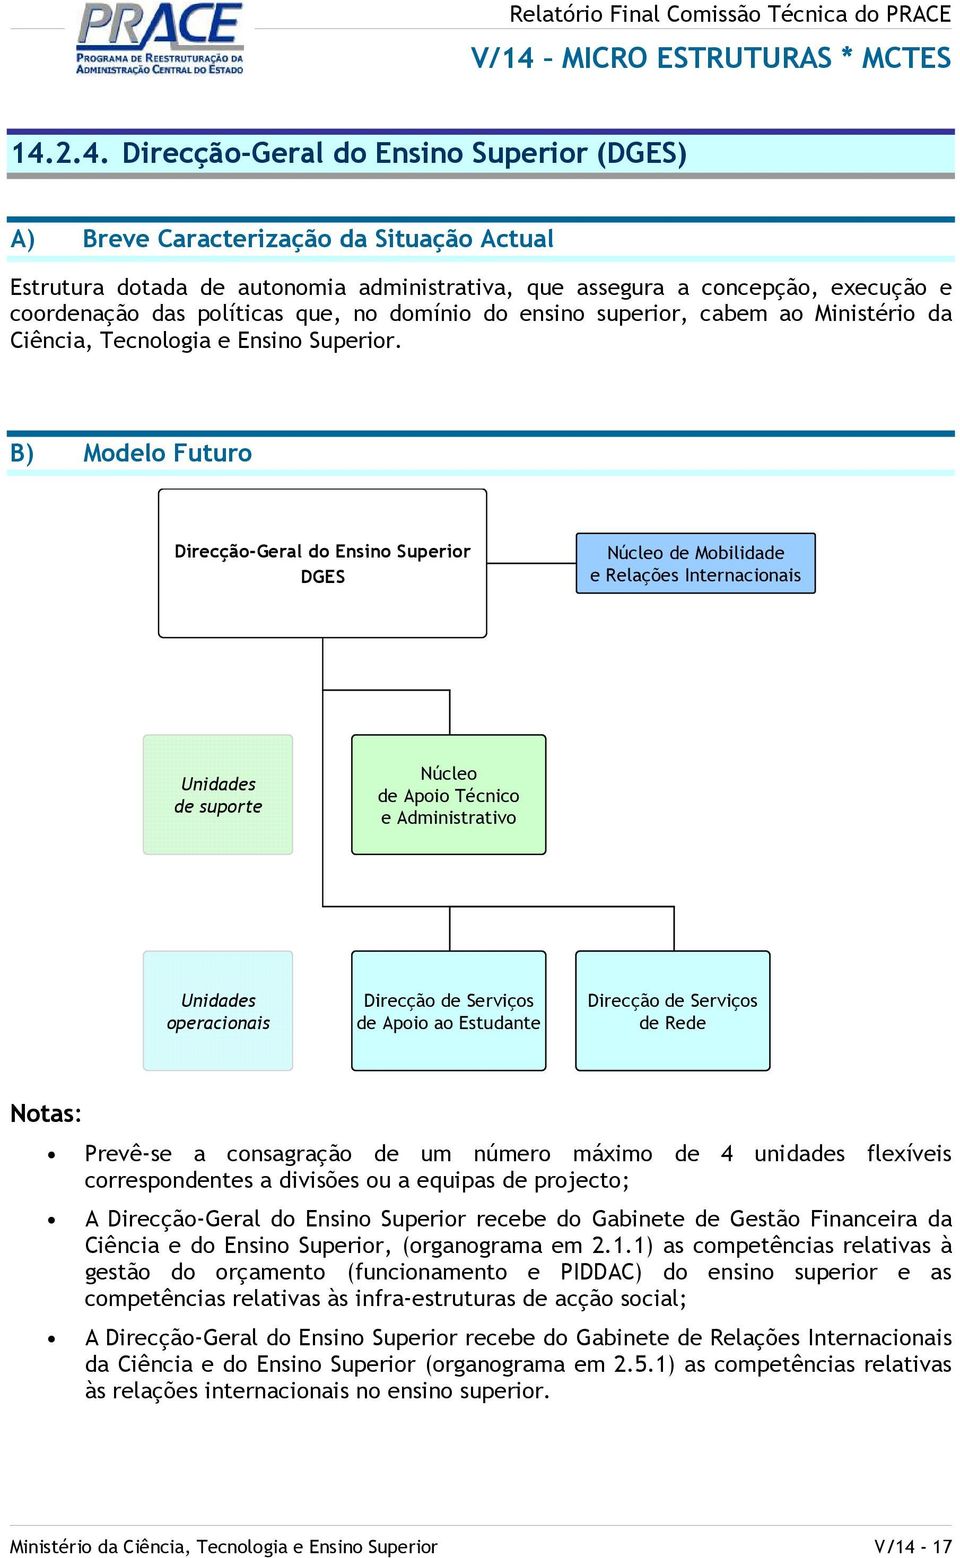 B) Modelo Futuro Direcção-Geral do Ensino Superior DGES Núcleo de Mobilidade e Relações Internacionais de suporte Núcleo de Apoio Técnico e Administrativo operacionais Direcção de Serviços de Apoio